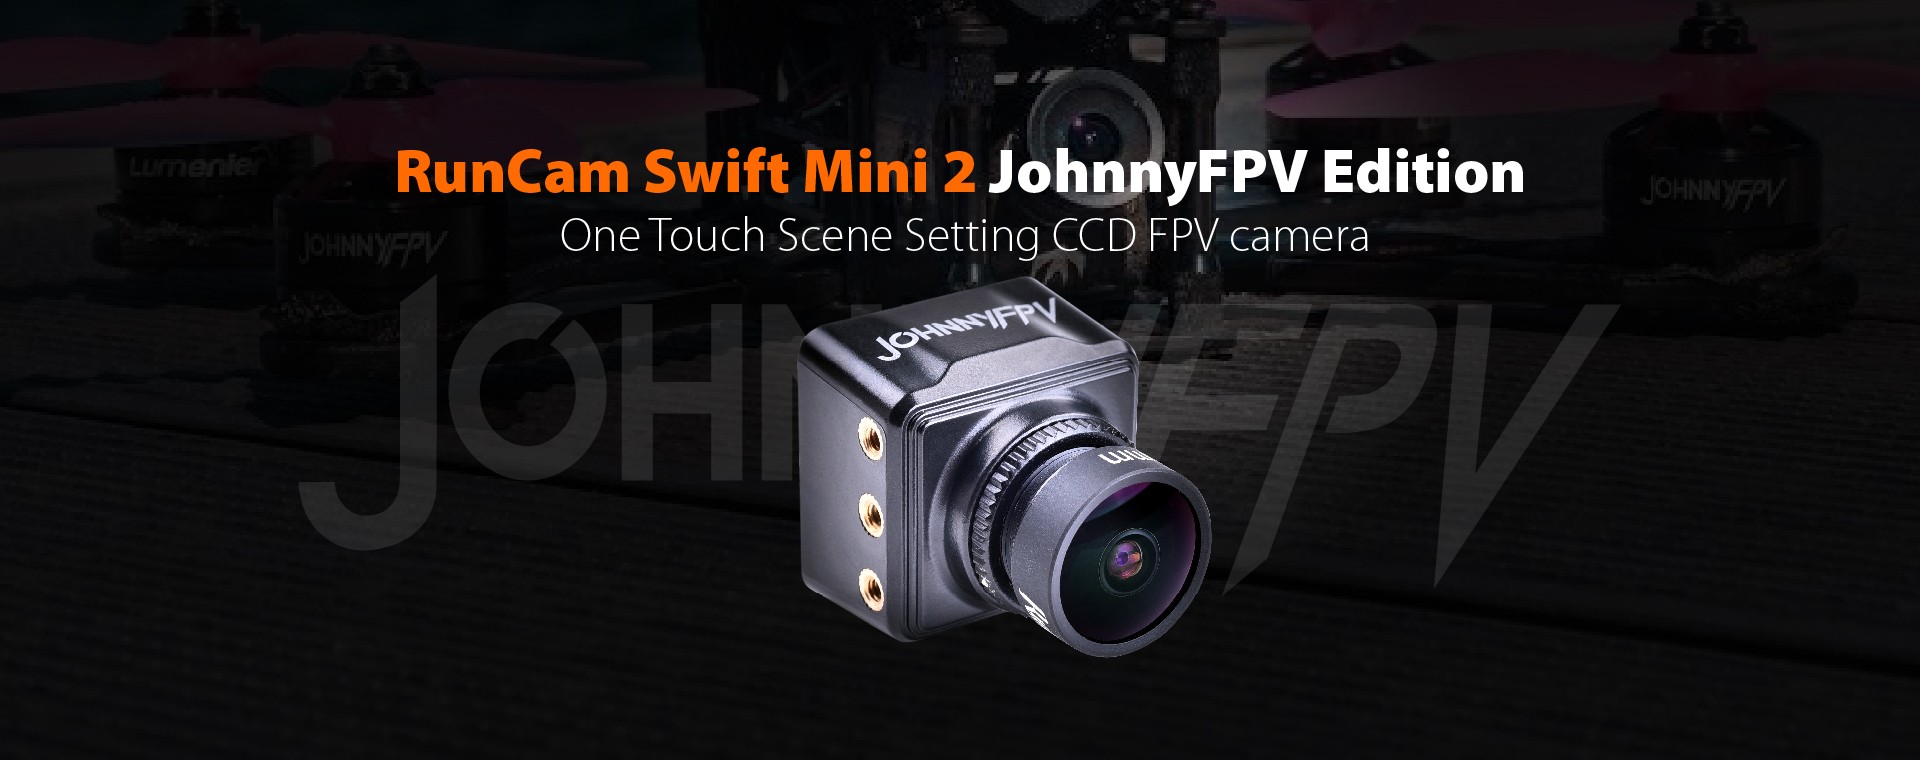 RunCam Swift Mini 2 JohnnyFPV Edition 3 - RunCam